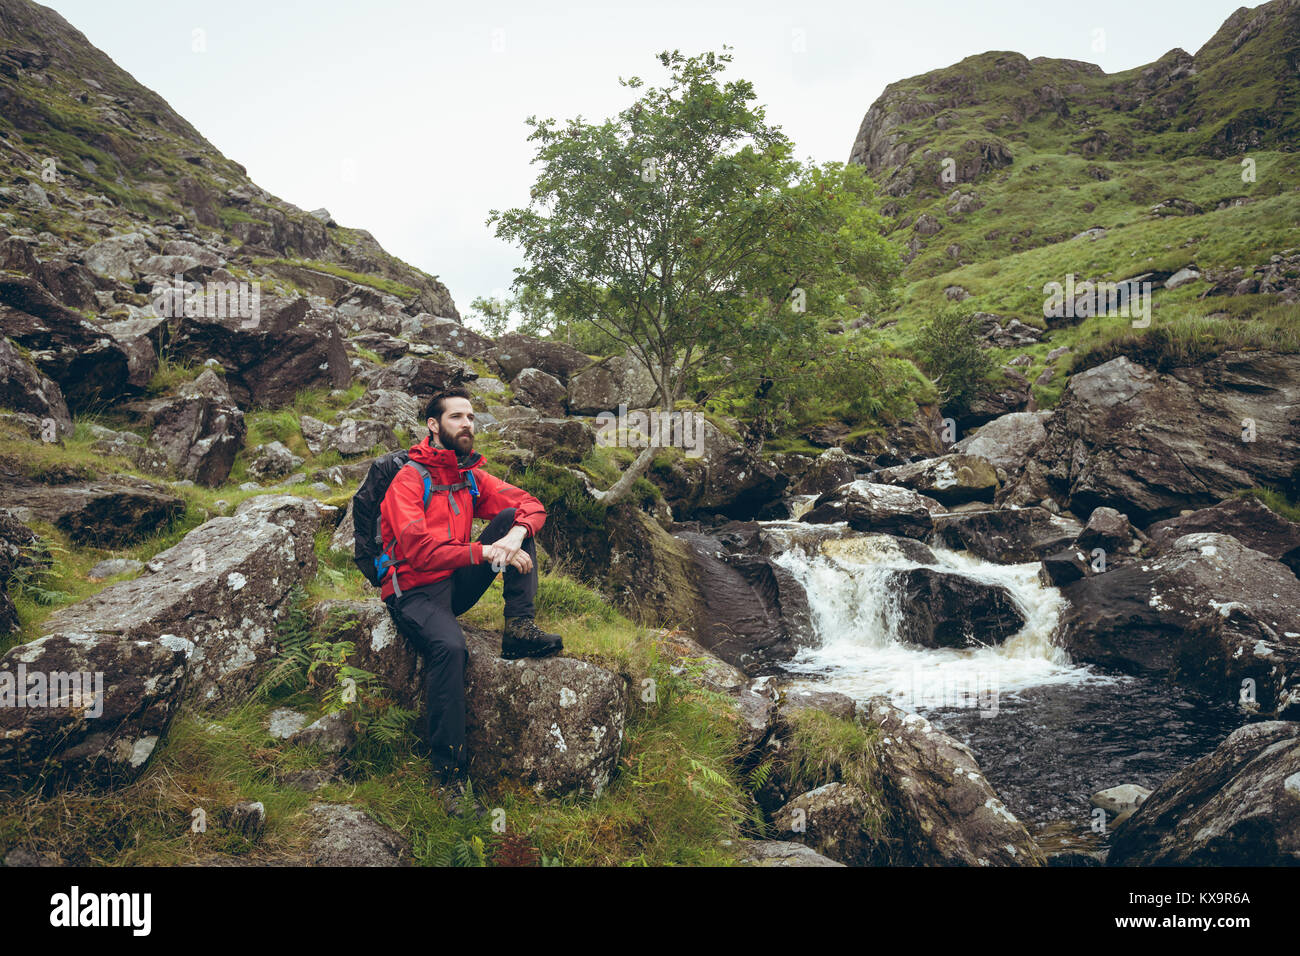 Escursionista seduto sulla roccia nei pressi di flusso Foto Stock